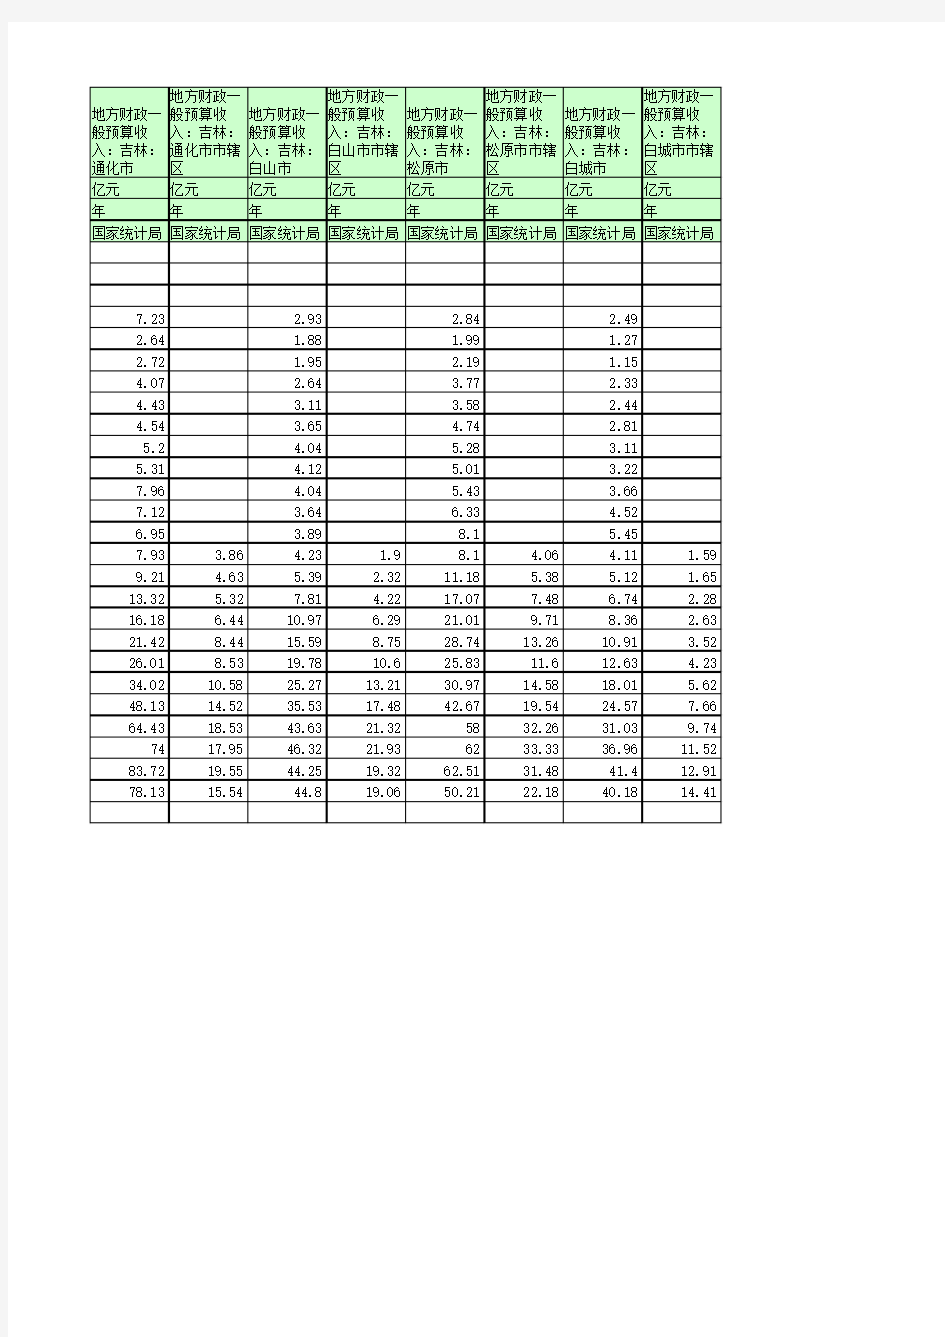 地方财政预算收入：吉林(1990年至2016年)